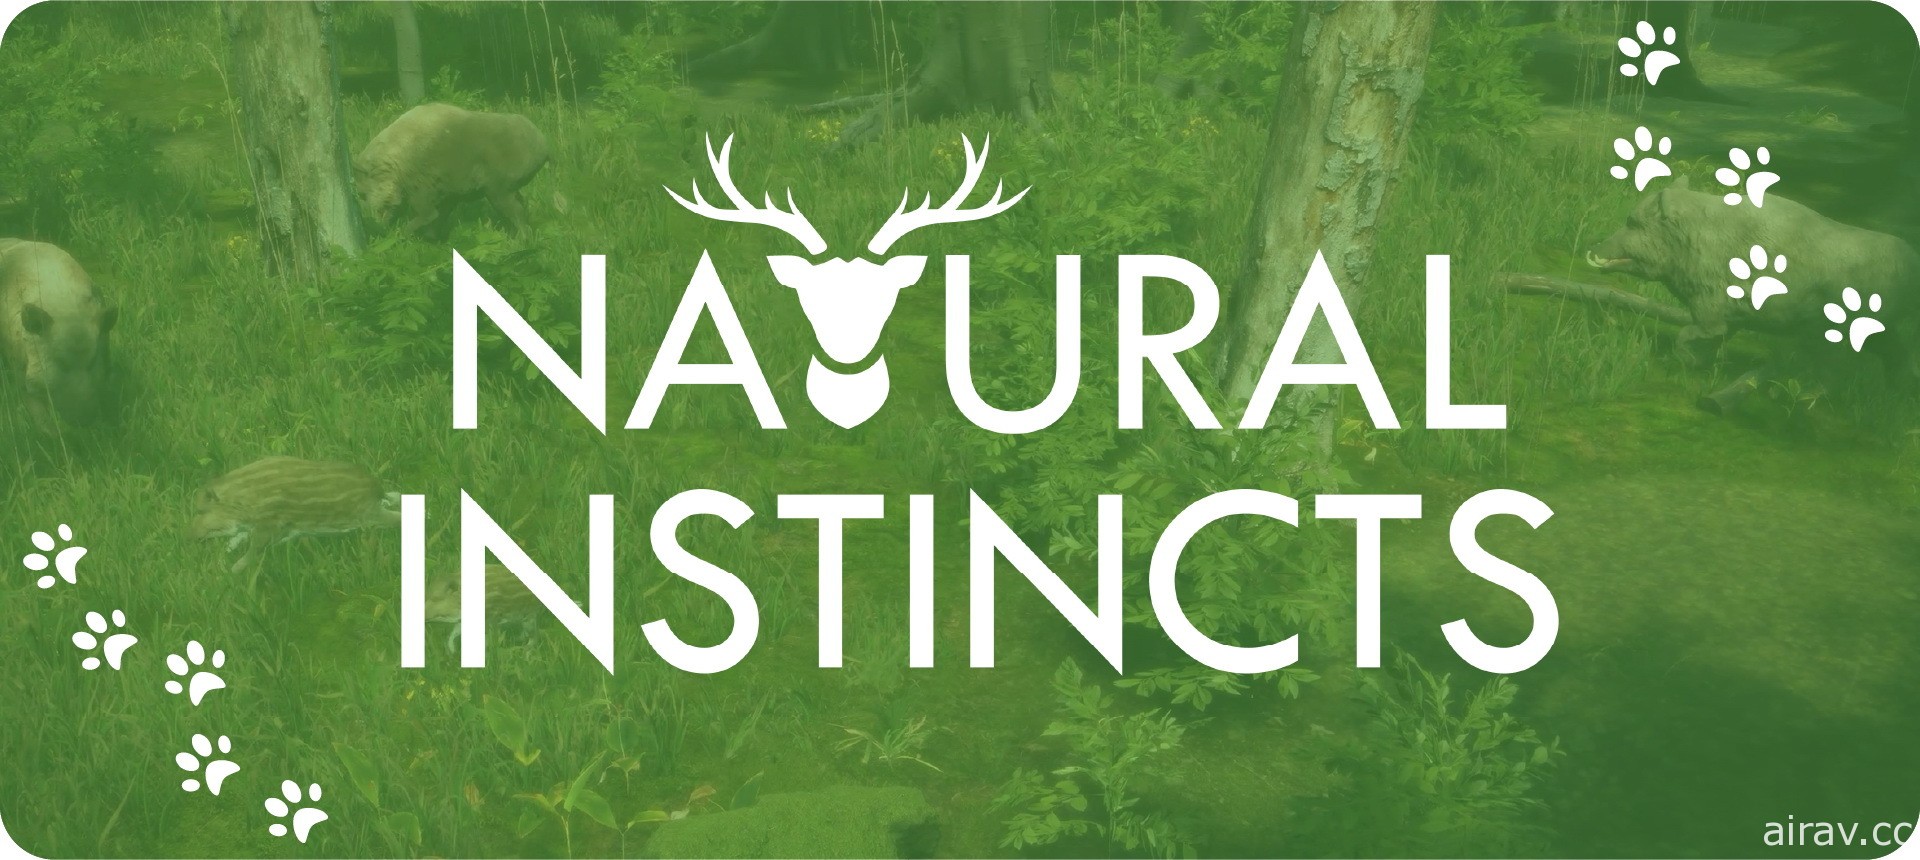 《自然本能》展开抢先体验 深入森林繁殖野生动物并尽力维持生态平衡